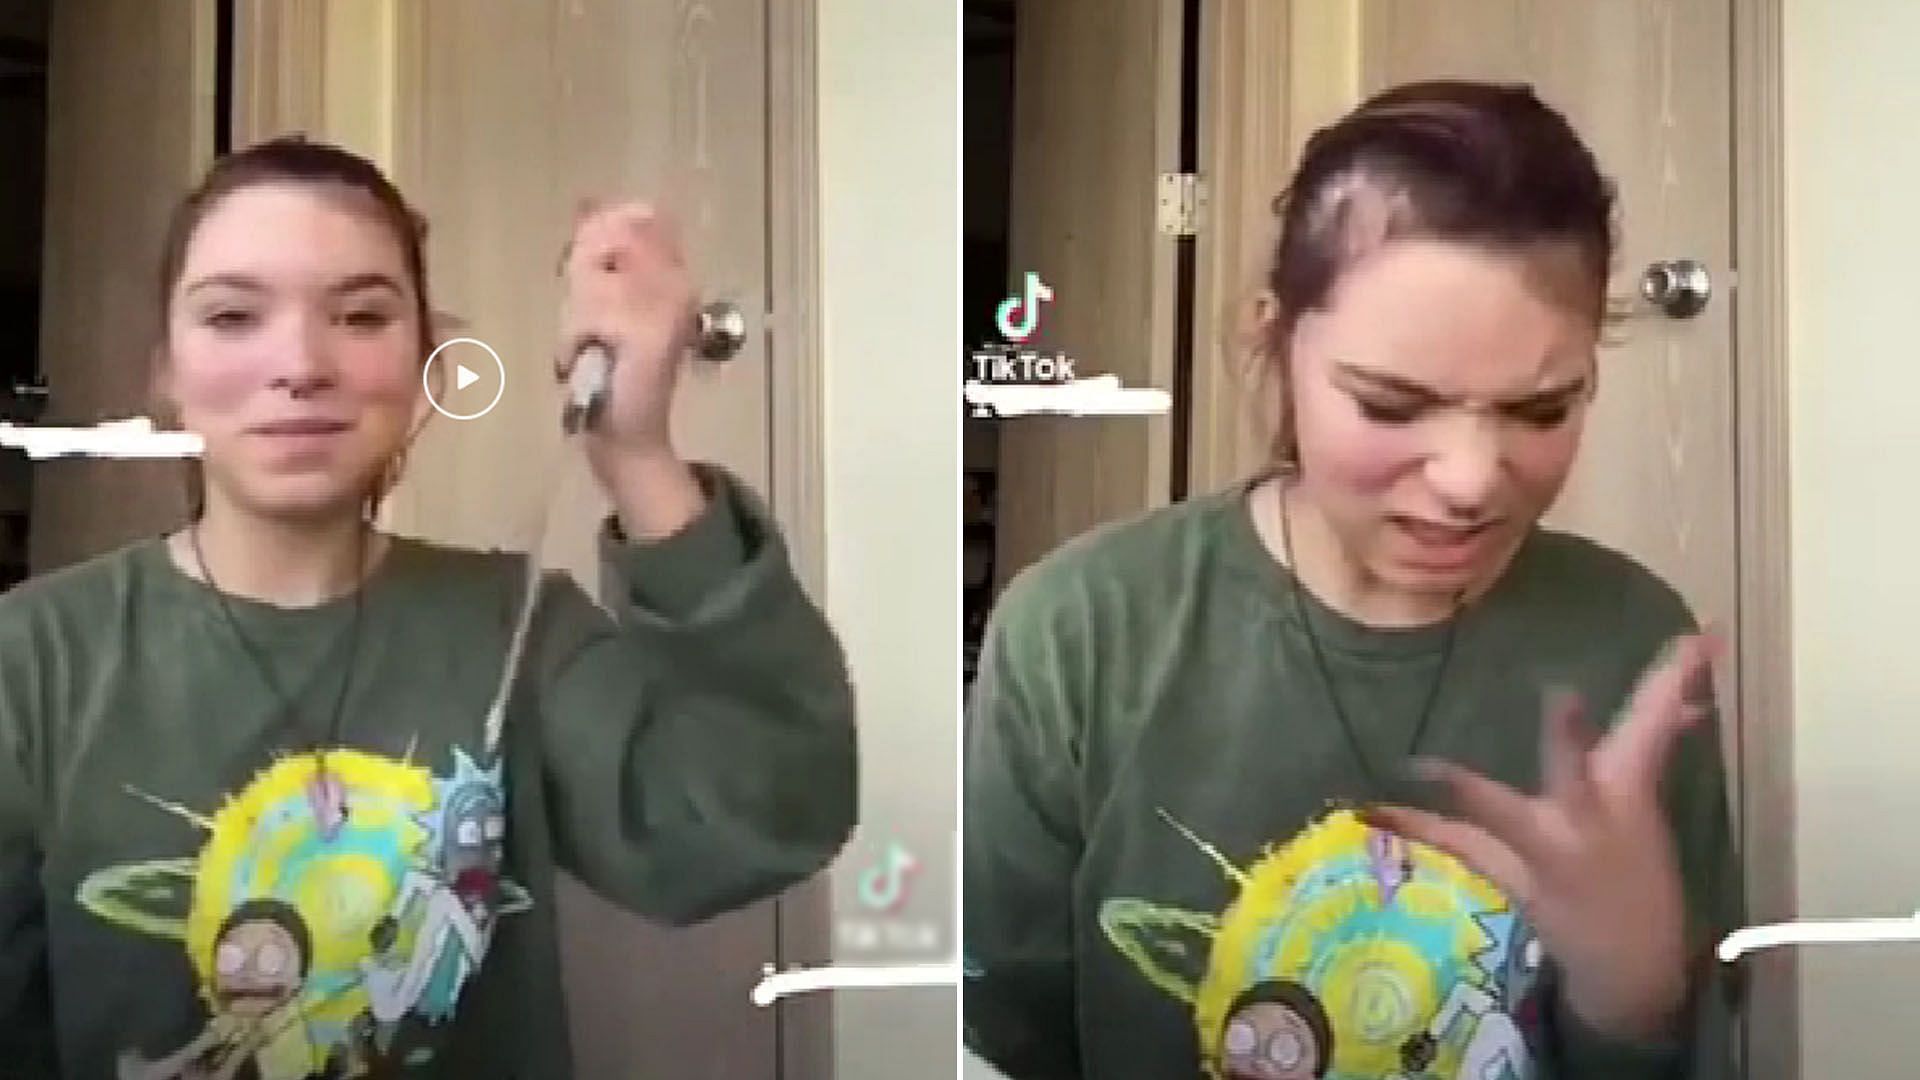 Haleigh Dawn knife video goes viral as girl cuts eyebrow. (Image via Reddit/@u/Akboy09)